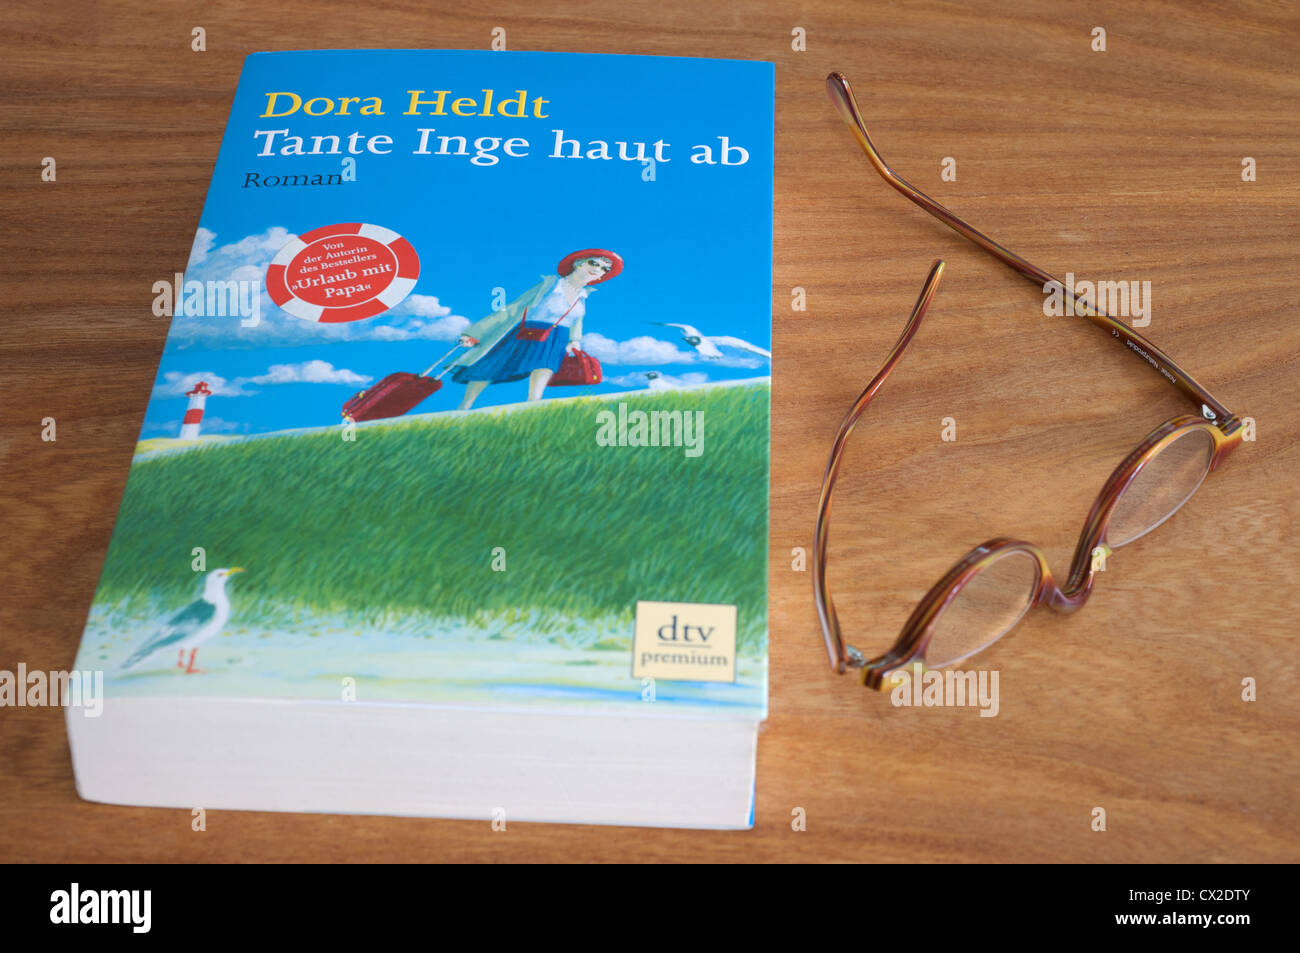 Dora Heldt 'Tante Inge Haut ab' novel Stock Photo